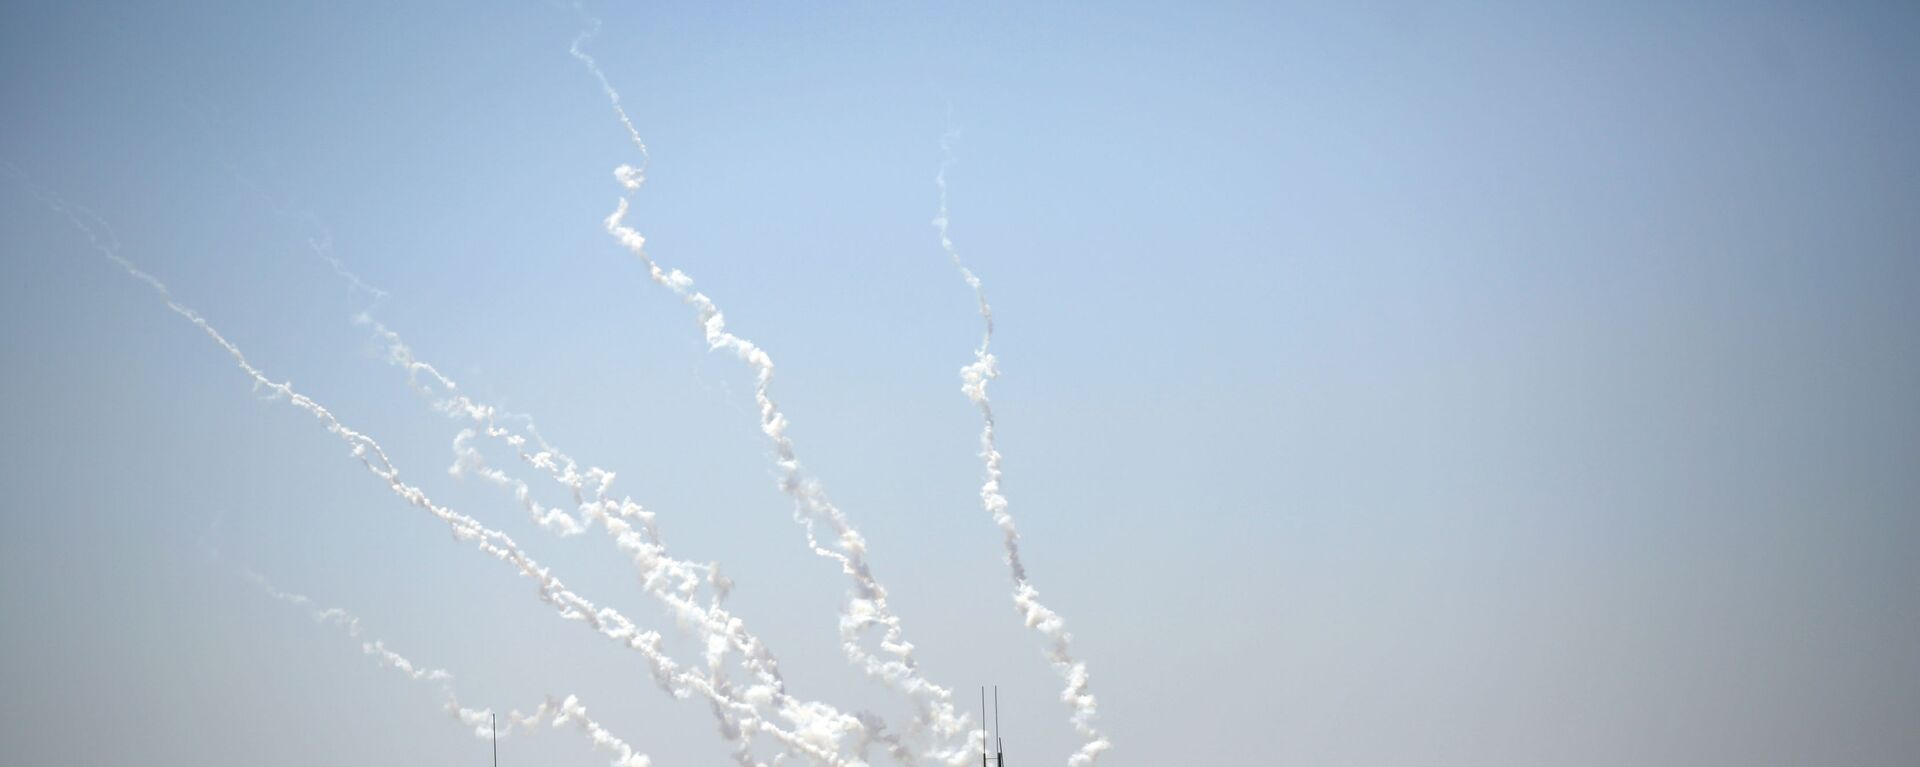 إطلاق رشقات جديدة من صواريخ المقاومة الفلسطينية من قطاع غزة، فلسطين 13 مايو 2021 - سبوتنيك عربي, 1920, 15.05.2021